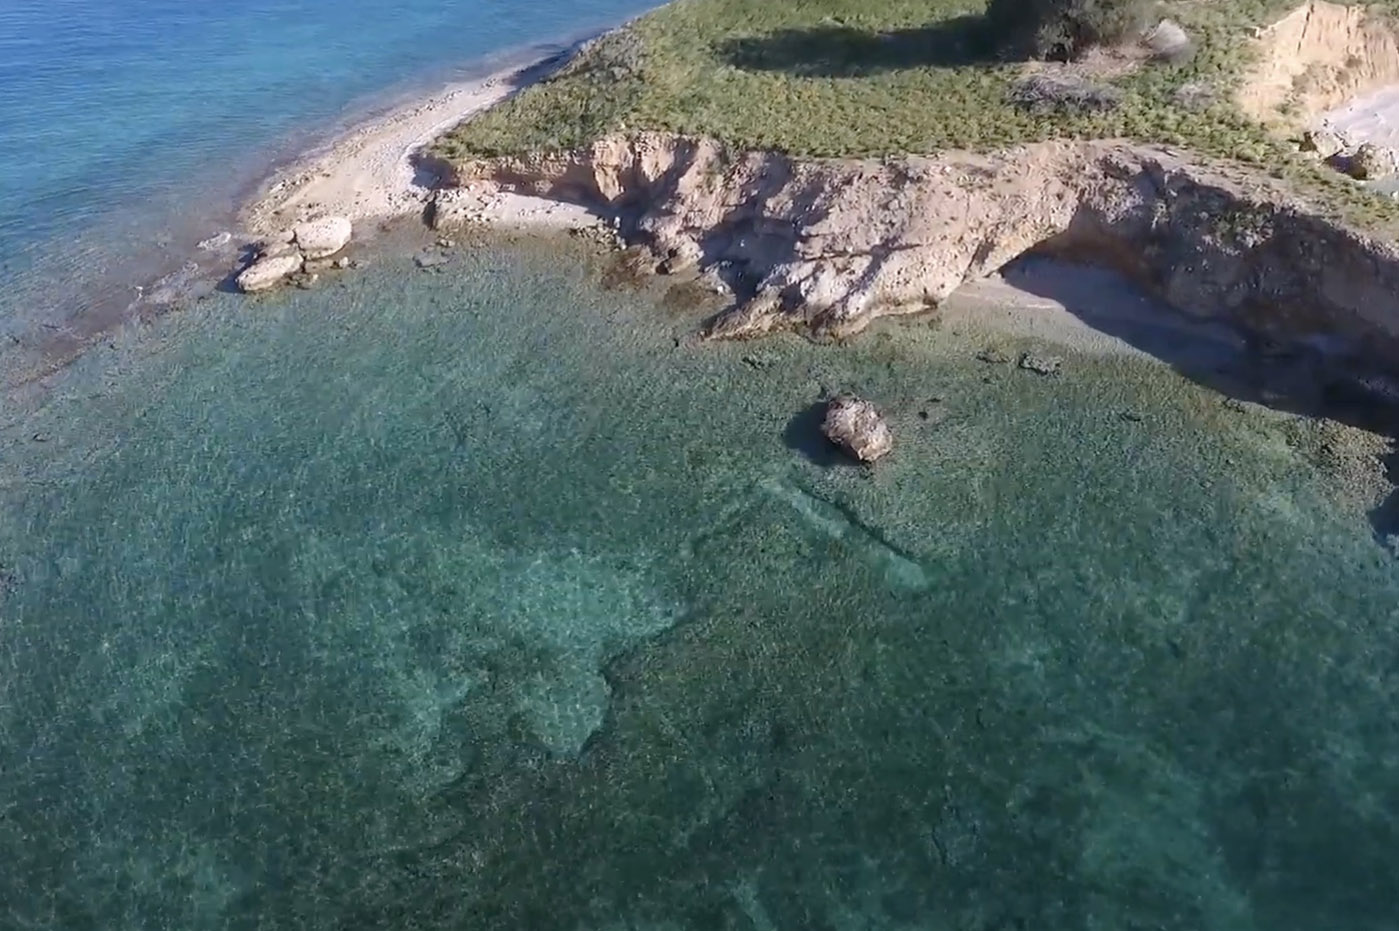 Αψηφιά: Η άγνωστη νησίδα της Ελλάδας με την απόκοσμη ομορφιά